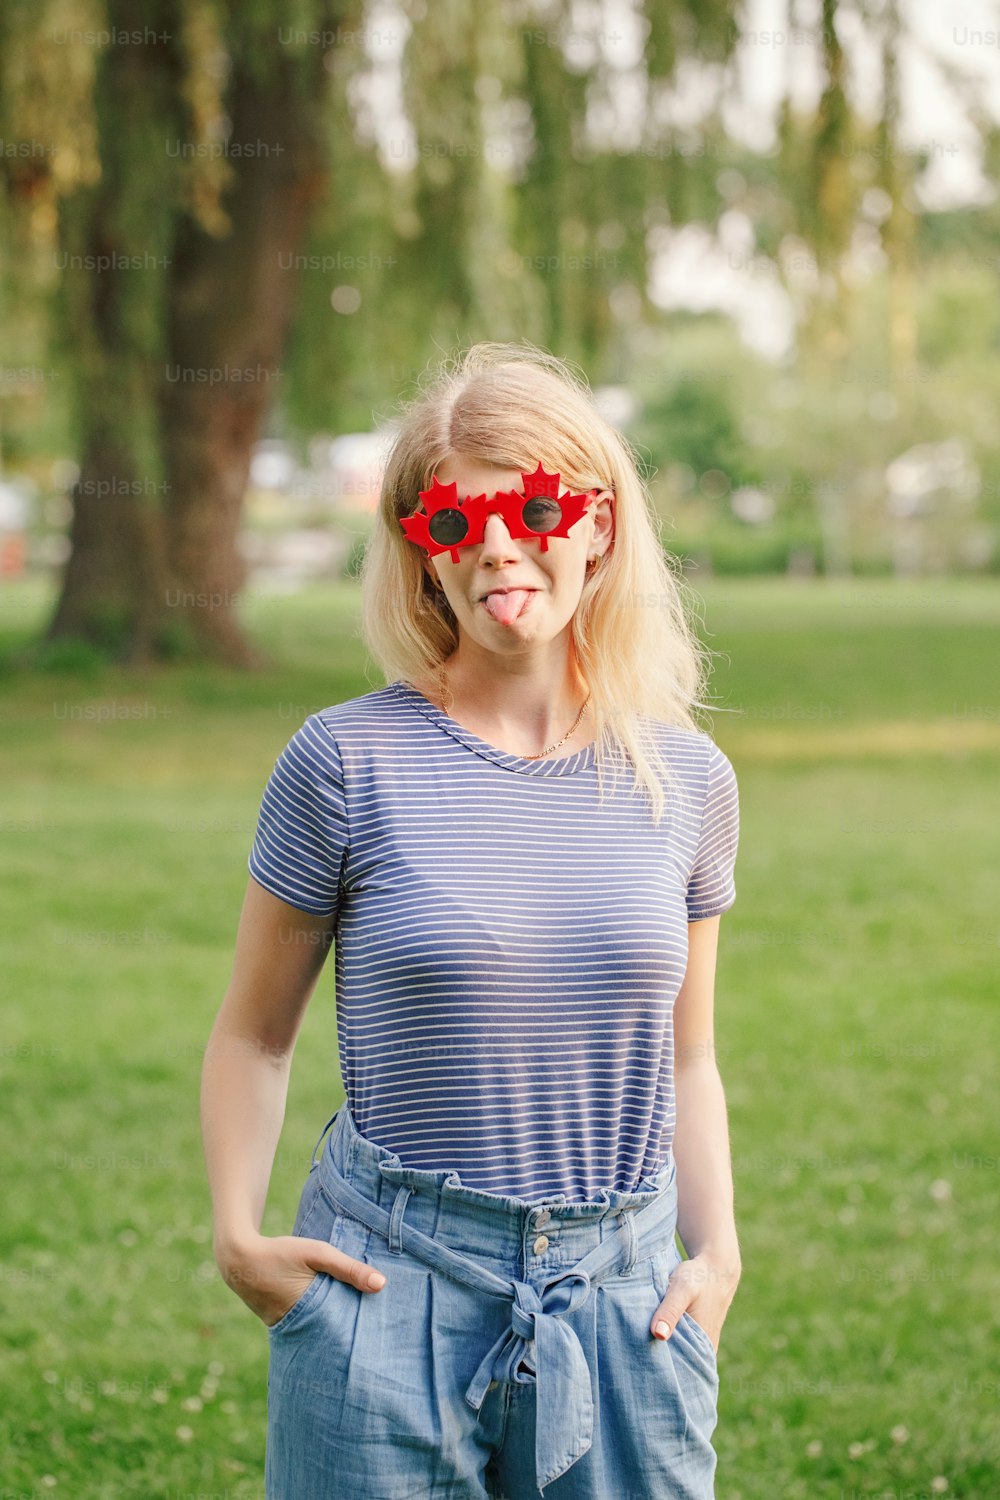 캐나다 단풍잎 선글라스를 쓴 재미있는 금발 백인 소녀. 빨간 선글라스를 쓴 행복한 힙스터 여자가 야외에서 즐거운 시간을 보내고 있다. 7월 1일 캐나다의 날 휴일을 축하하는 시민 여성.